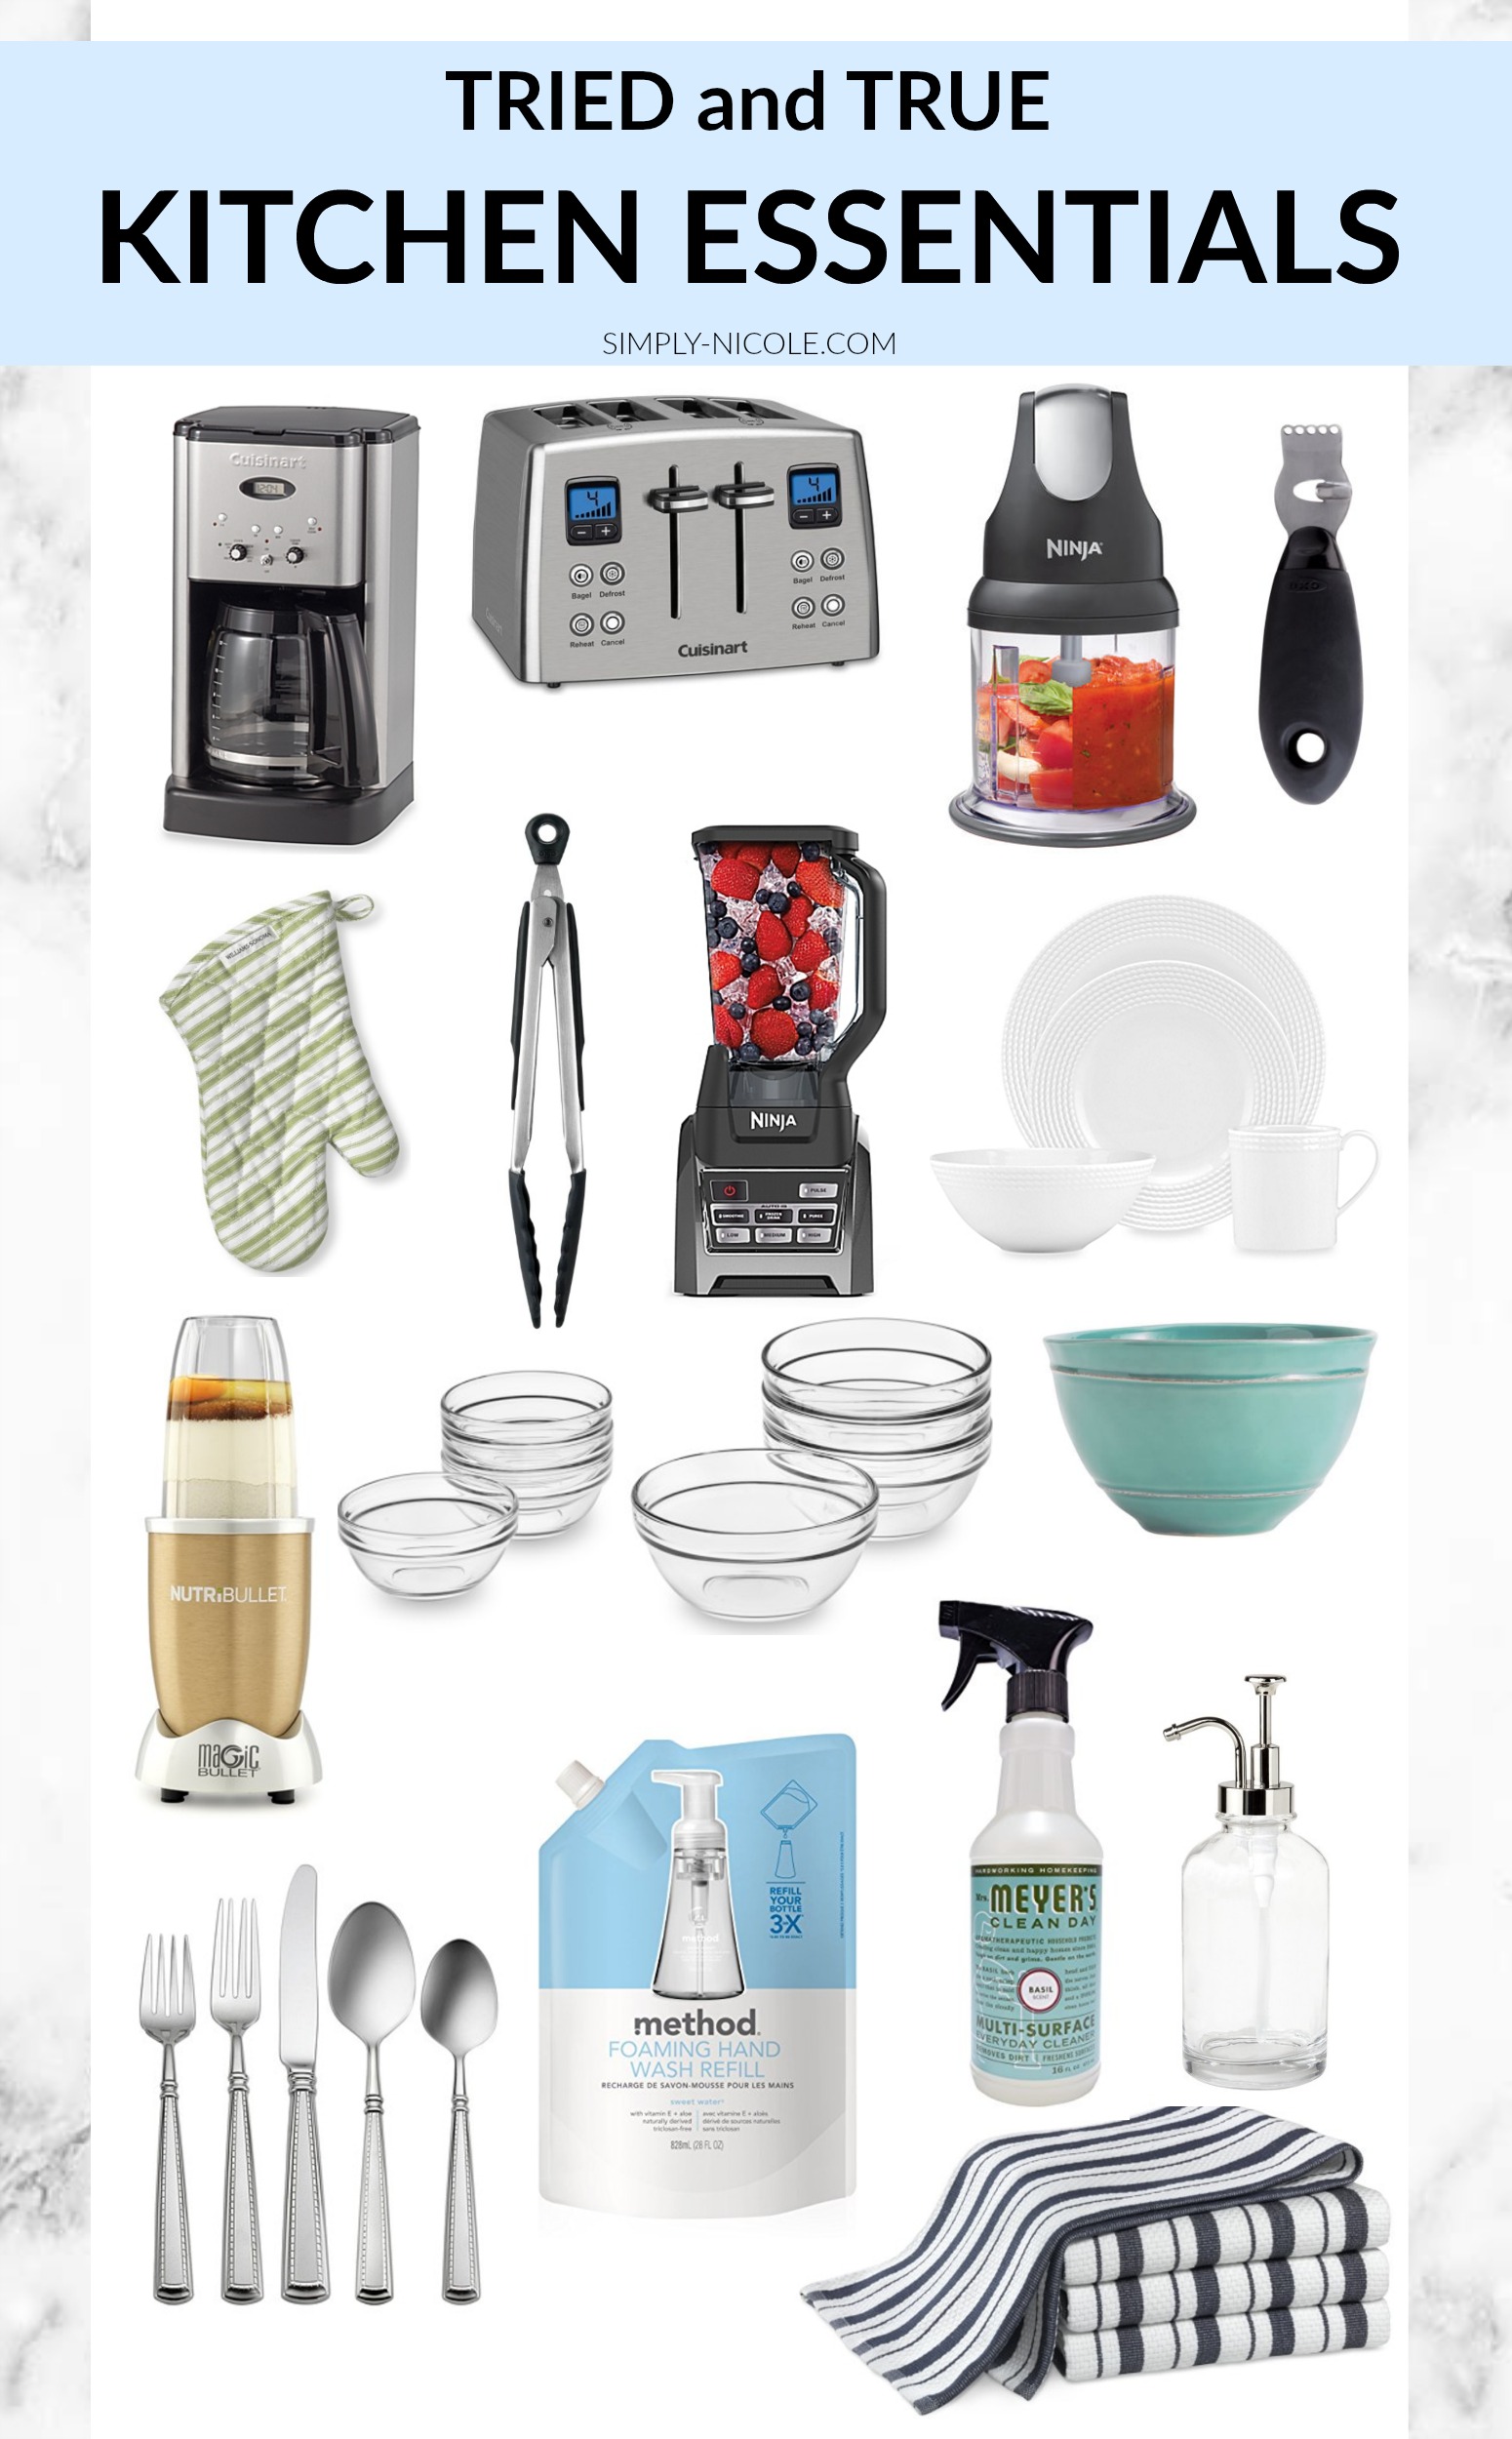 Tried and true kitchen essentials via simply-nicole.com